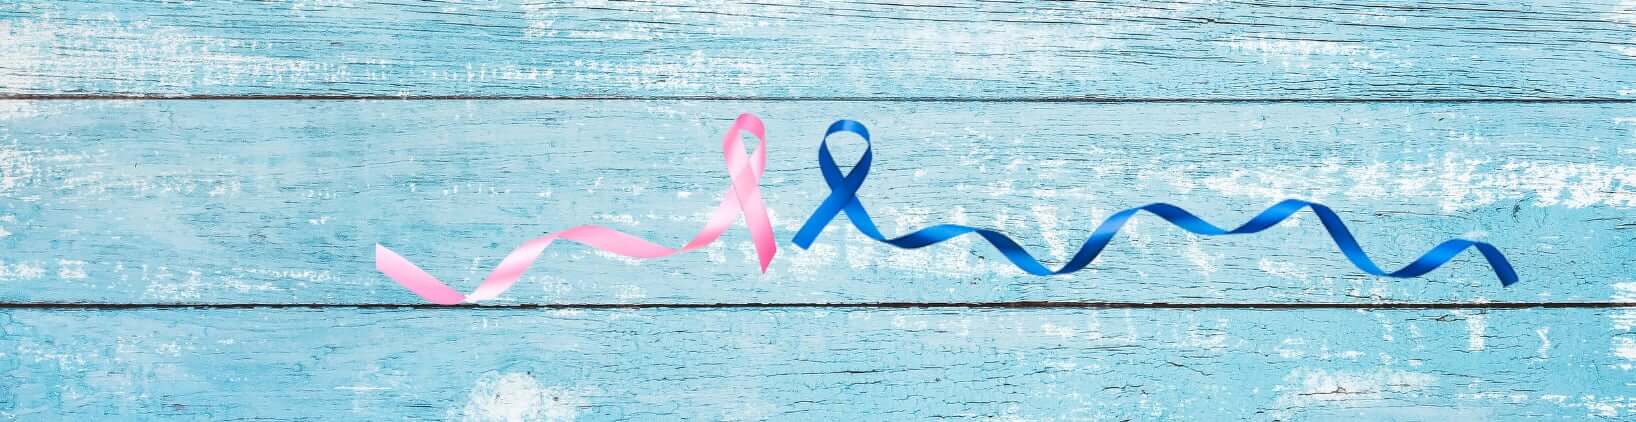 Slika je mišljena za rožnati oktober za boj proti raku na dojkah.